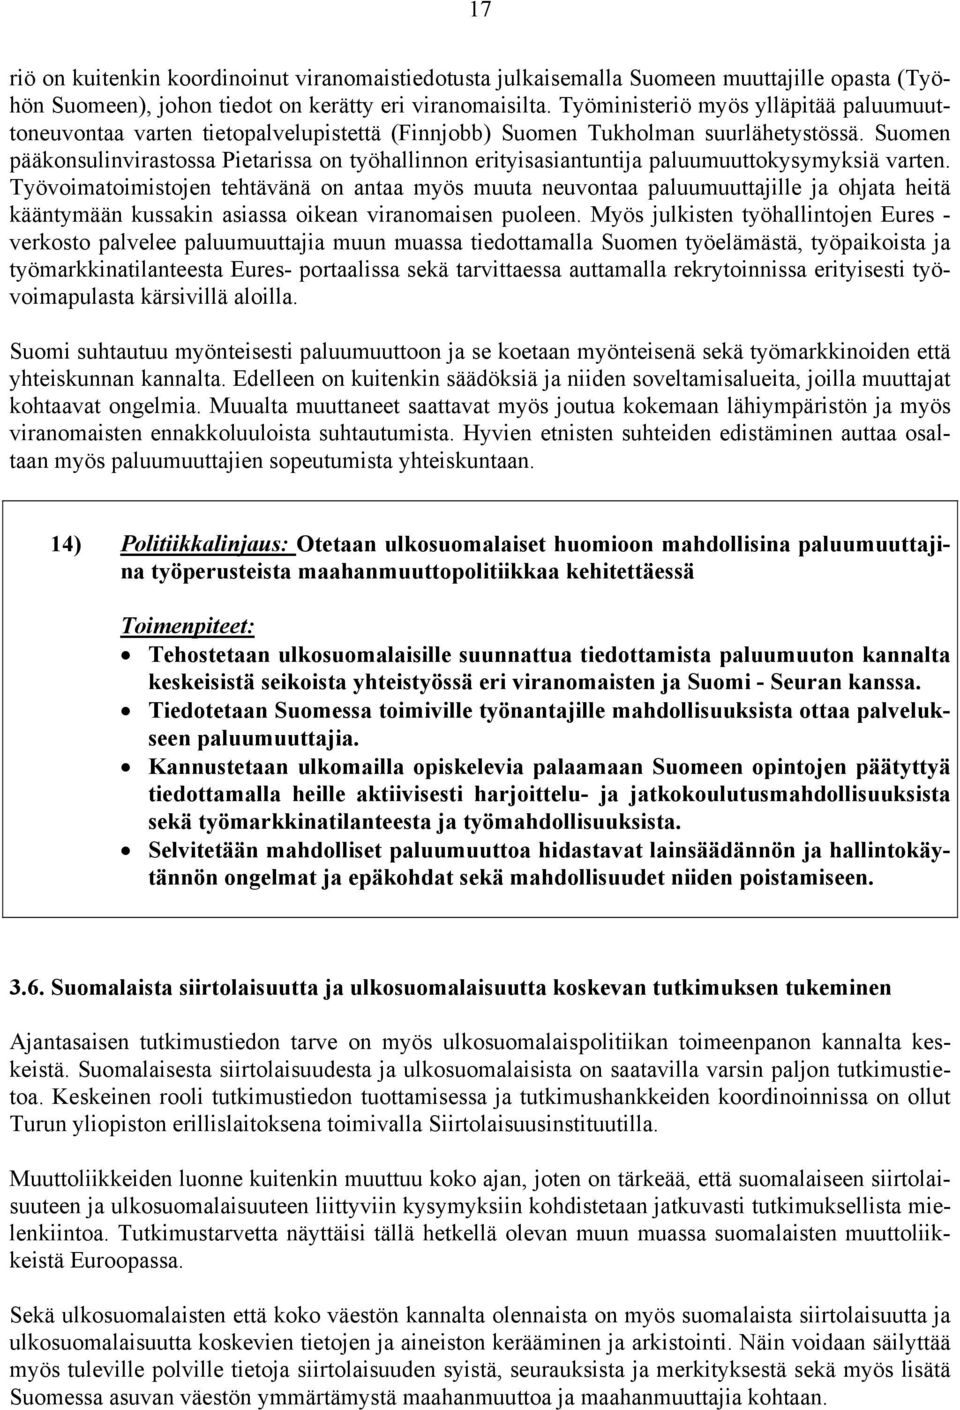 Suomen pääkonsulinvirastossa Pietarissa on työhallinnon erityisasiantuntija paluumuuttokysymyksiä varten.